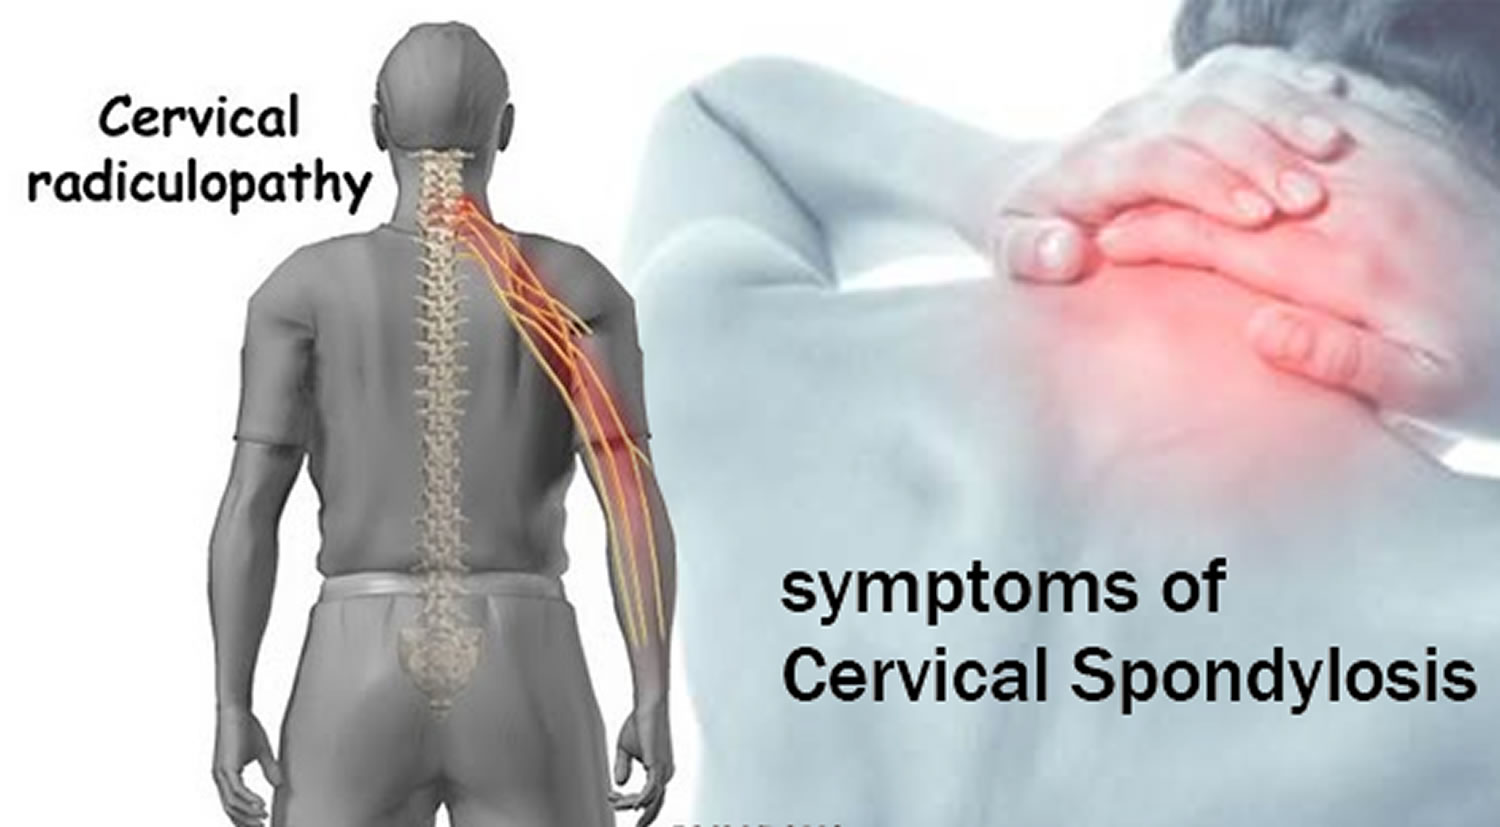 Cervical Spondylosis: What It Is, Symptoms & Treatment